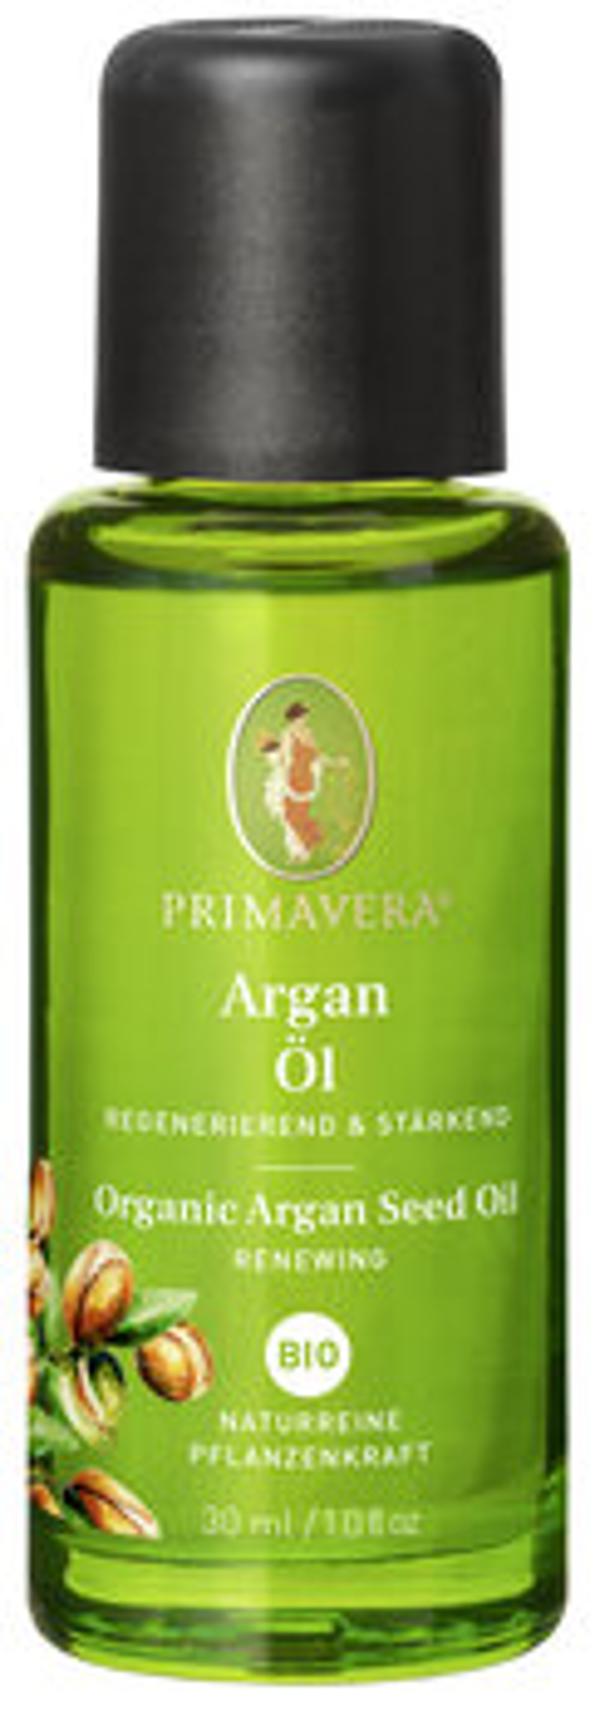 Produktfoto zu Arganöl 30 ml